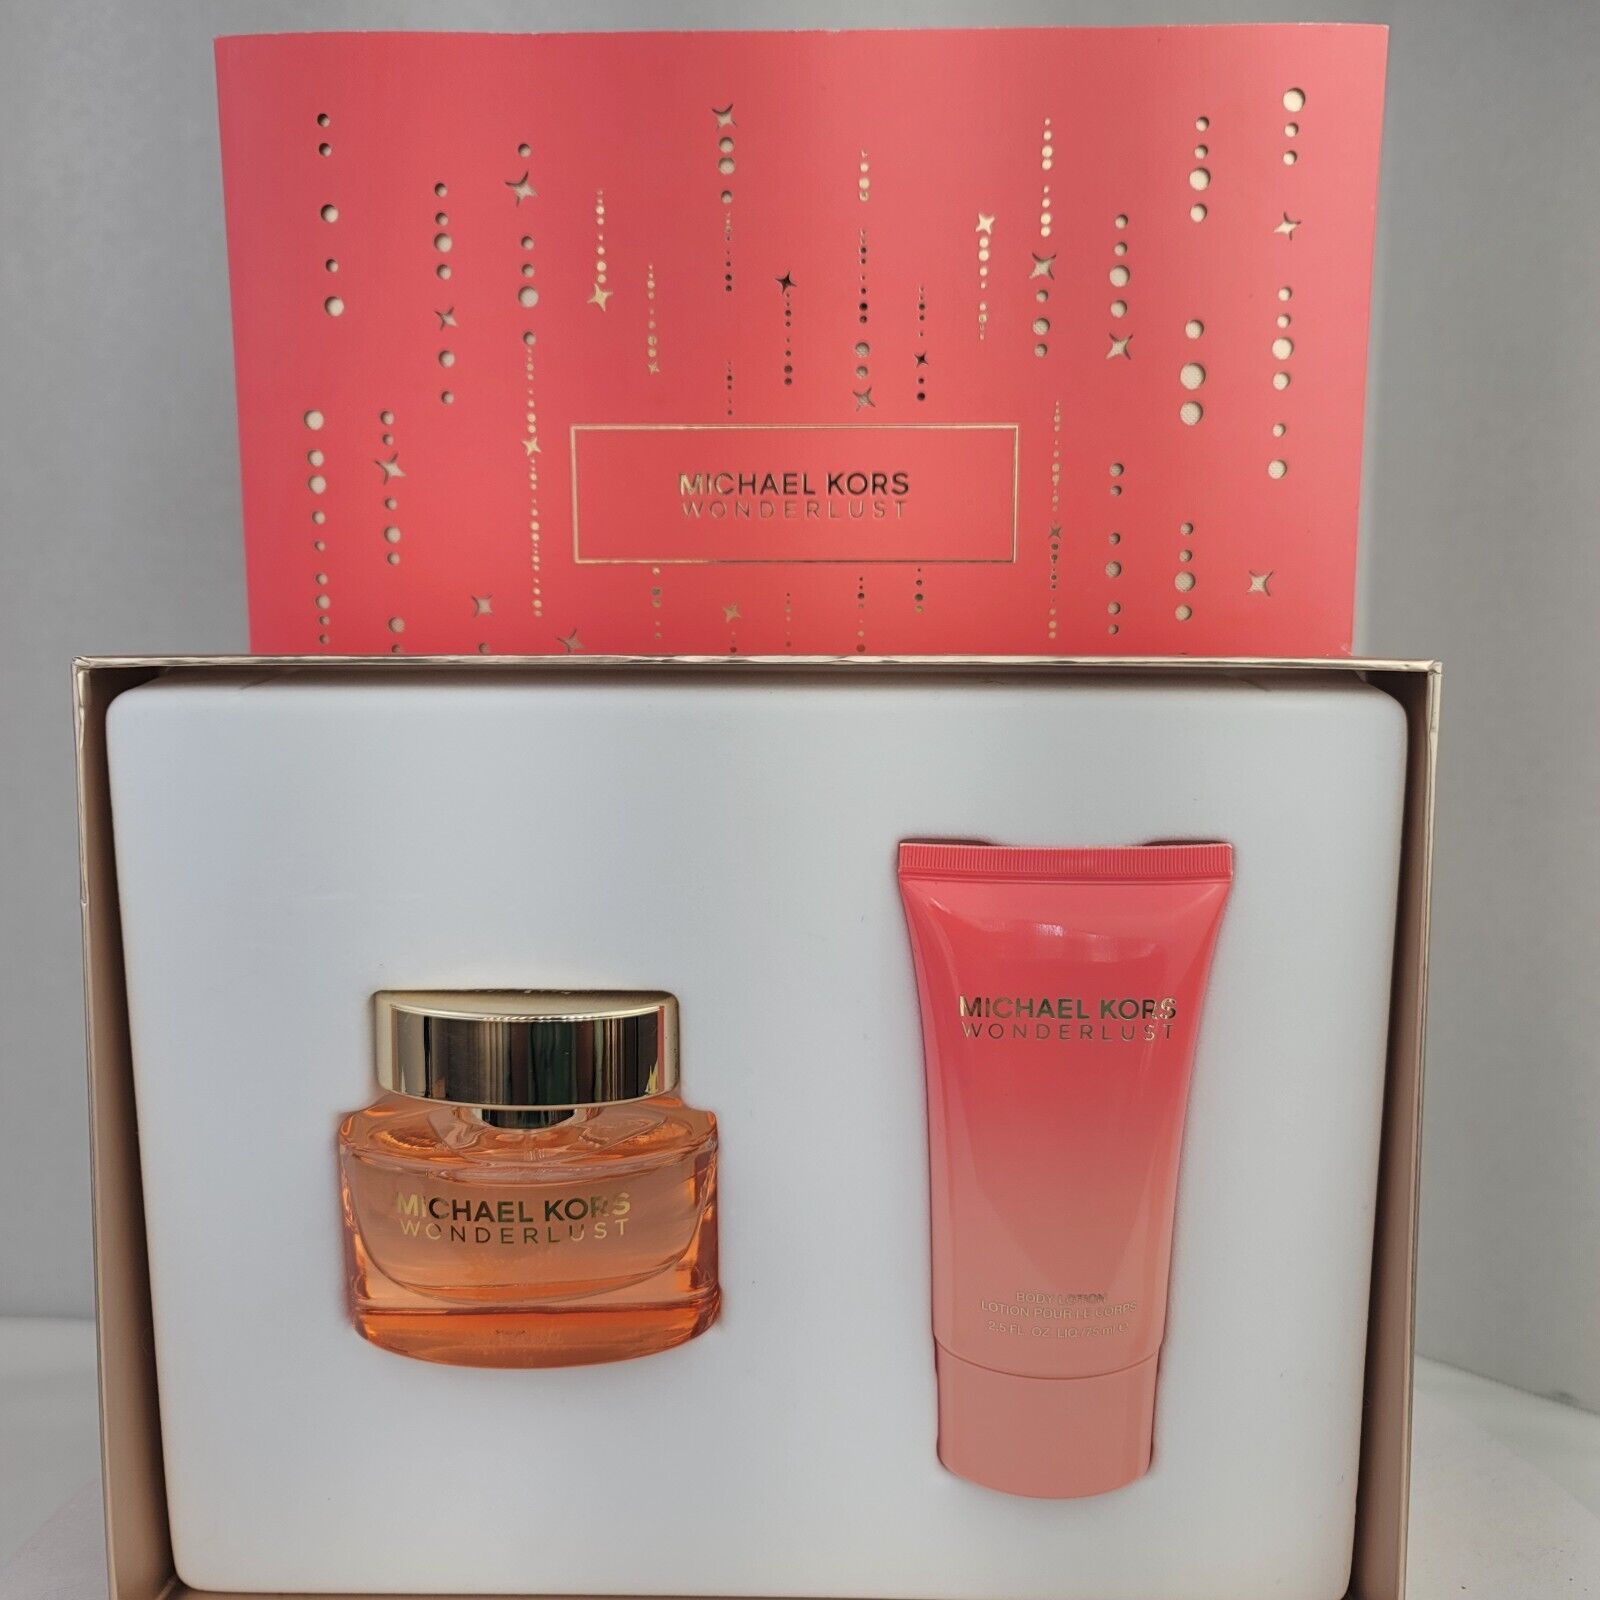 Michael Kors Wonderlust Eau de Parfum gift set 1 oz + lotion 2.5 fl oz Authentic